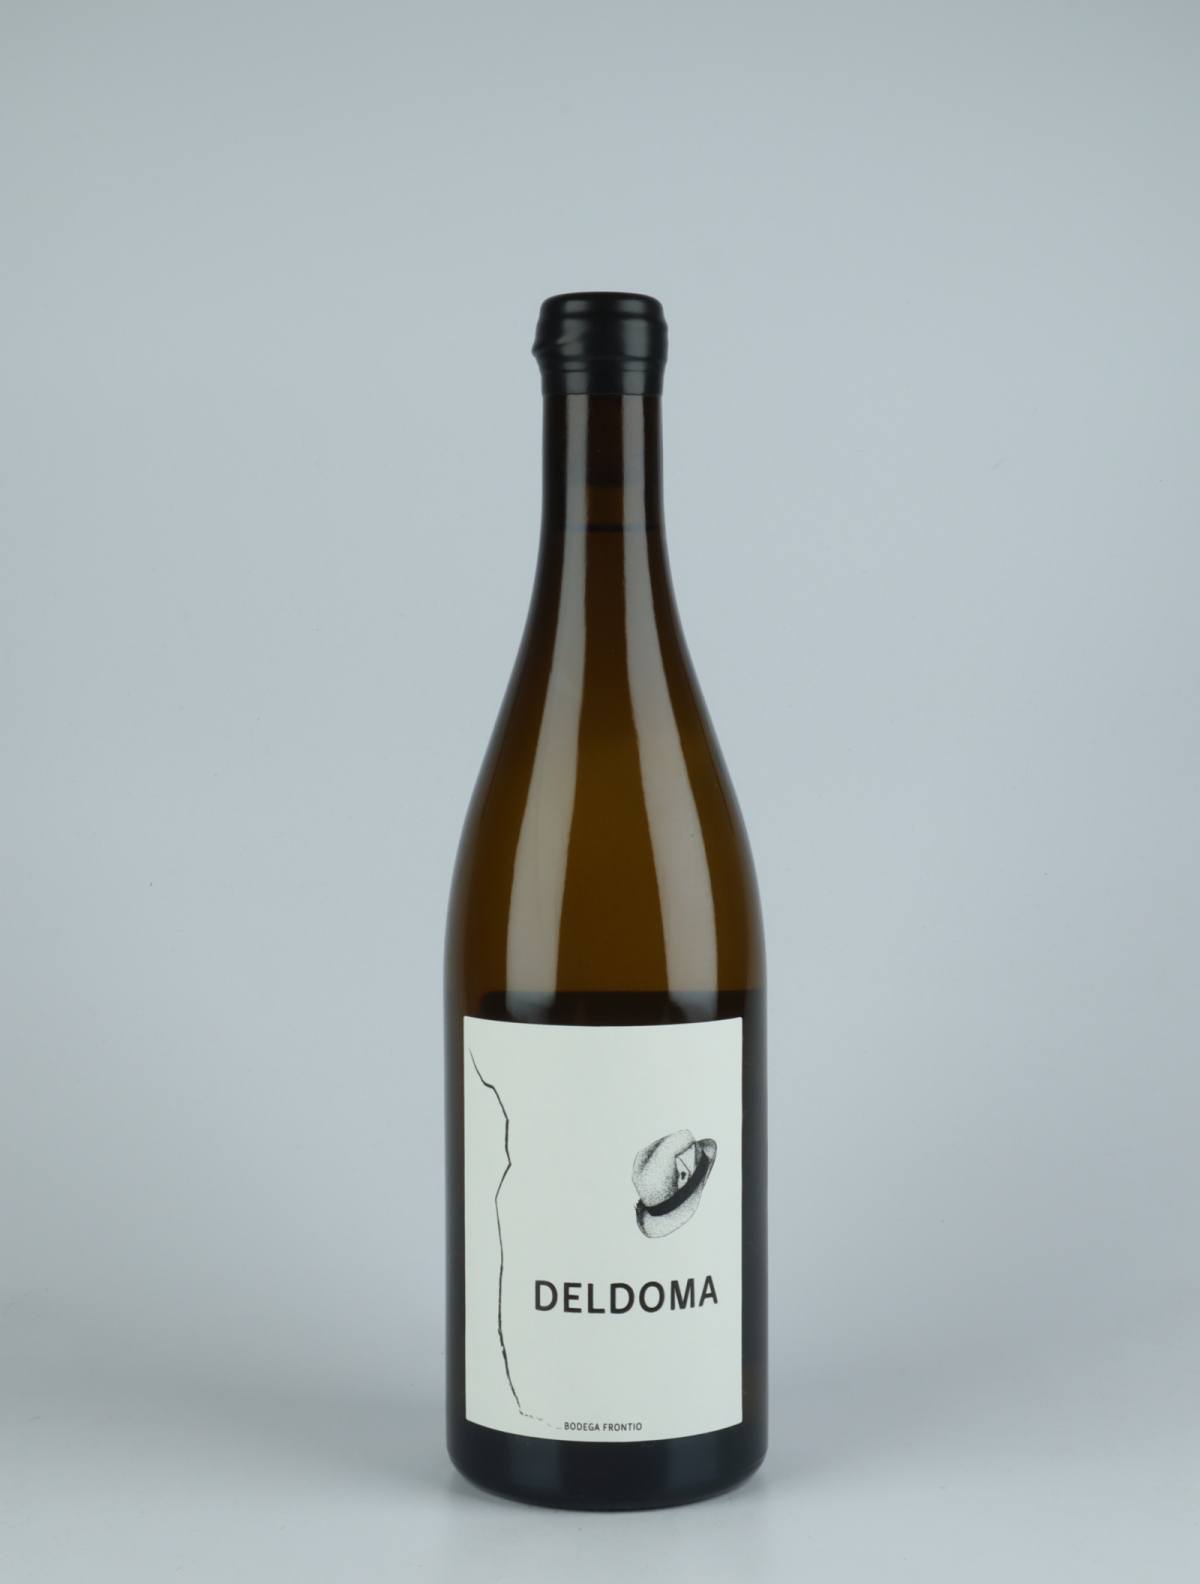 En flaske 2020 Deldoma Hvidvin fra Bodega Frontio, Arribes i Spanien